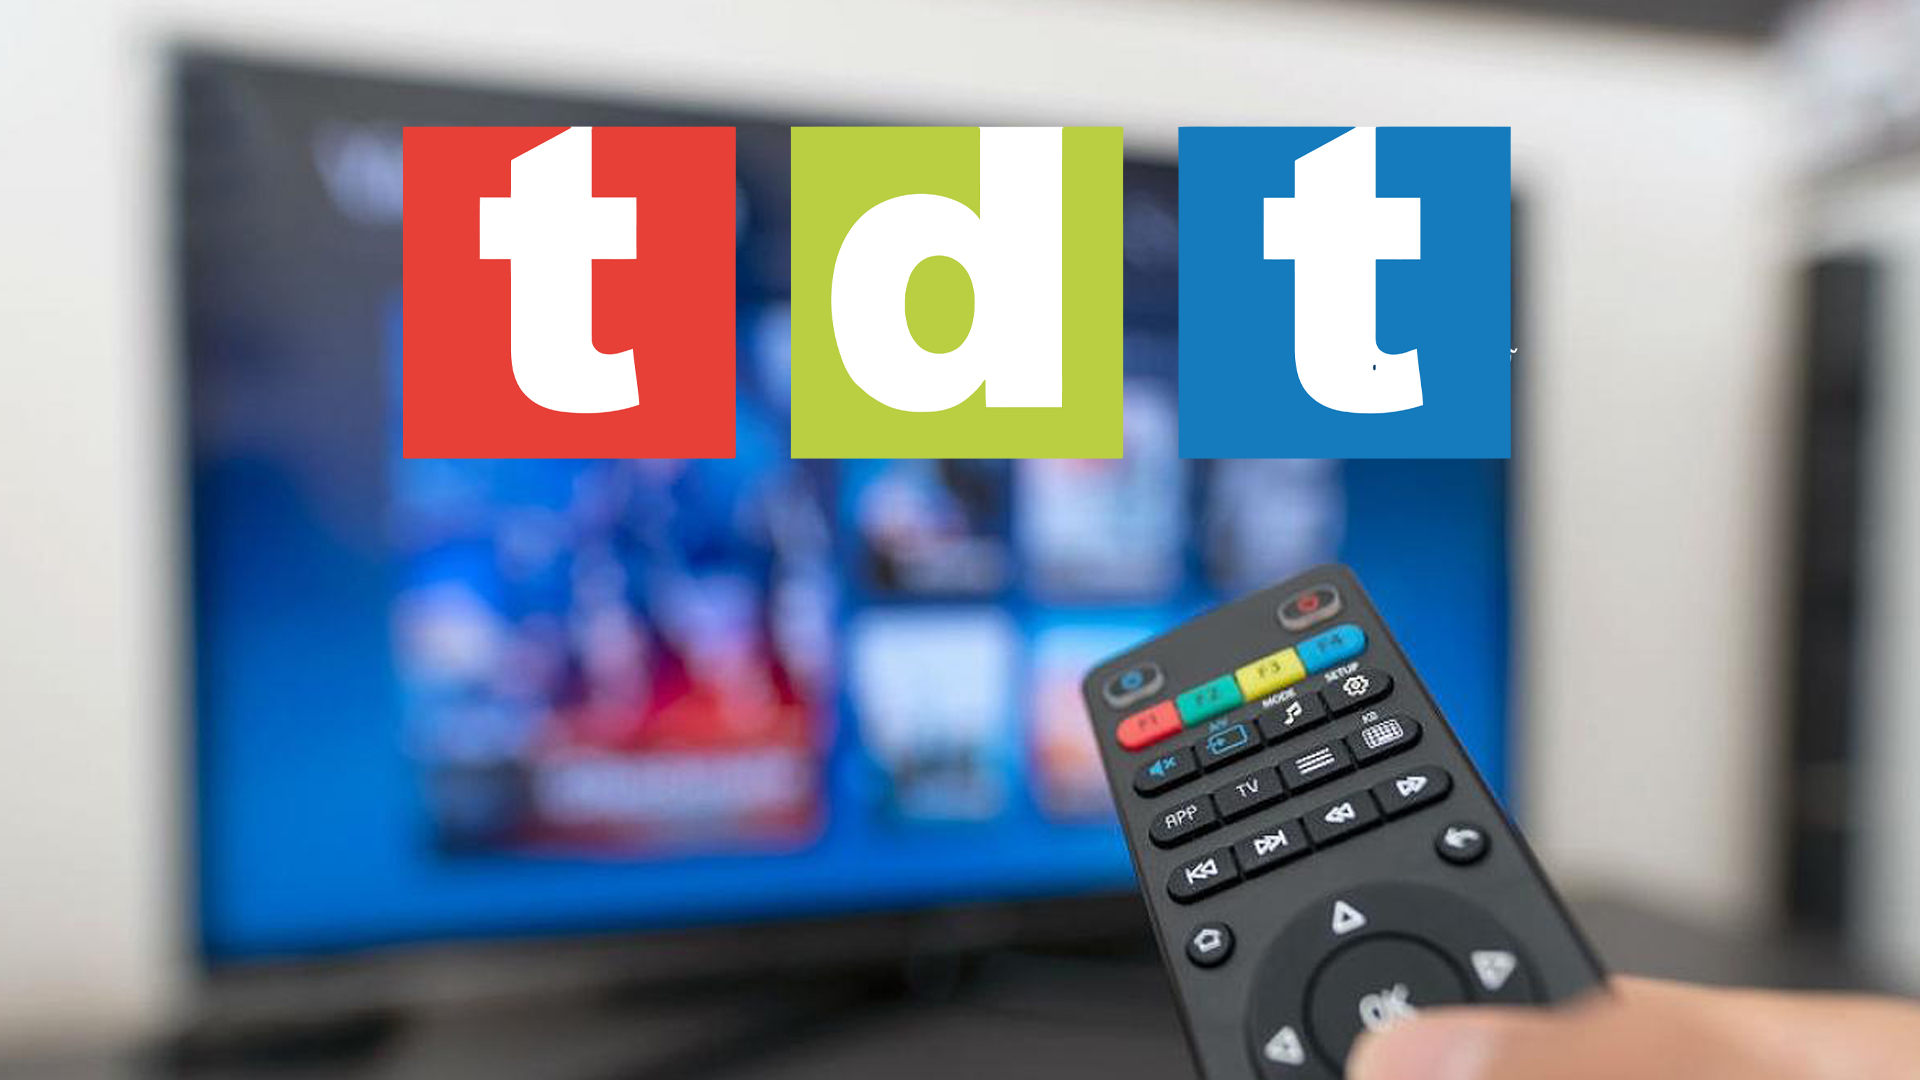 La TDT busca ahora una nueva revolución, la retransmisión audiovisual digital a través de internet (DVB-I), estar donde están las otras opciones con sus ventajas: visionado a demanda con información complementaria y desde cualquier dispositivo.